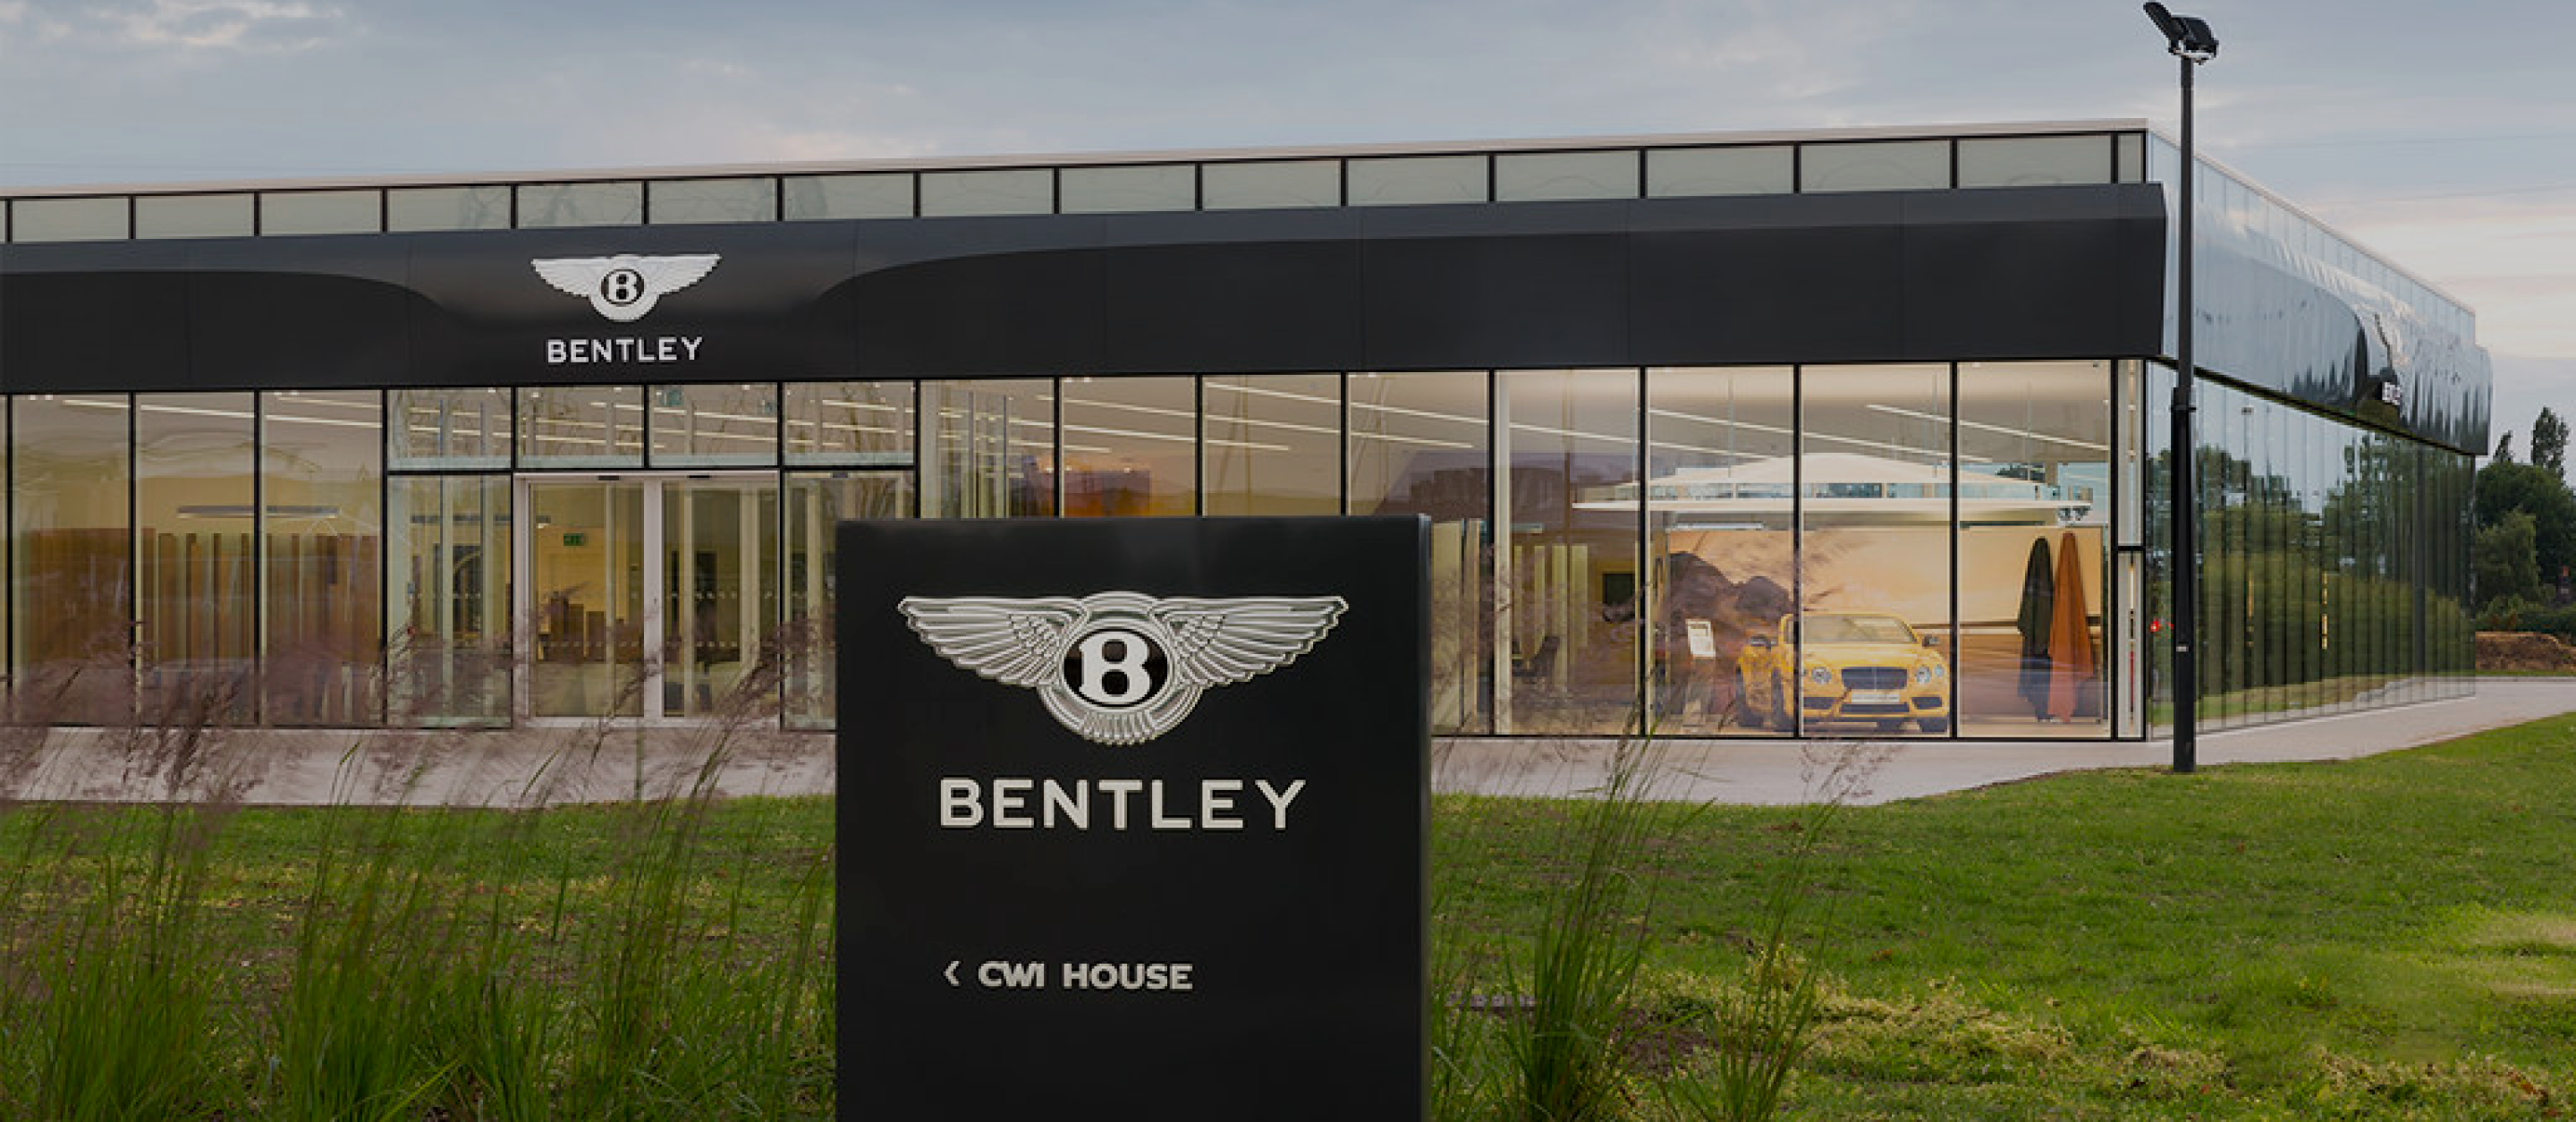 Bentley(賓利)全車系甲乙丙式車體險